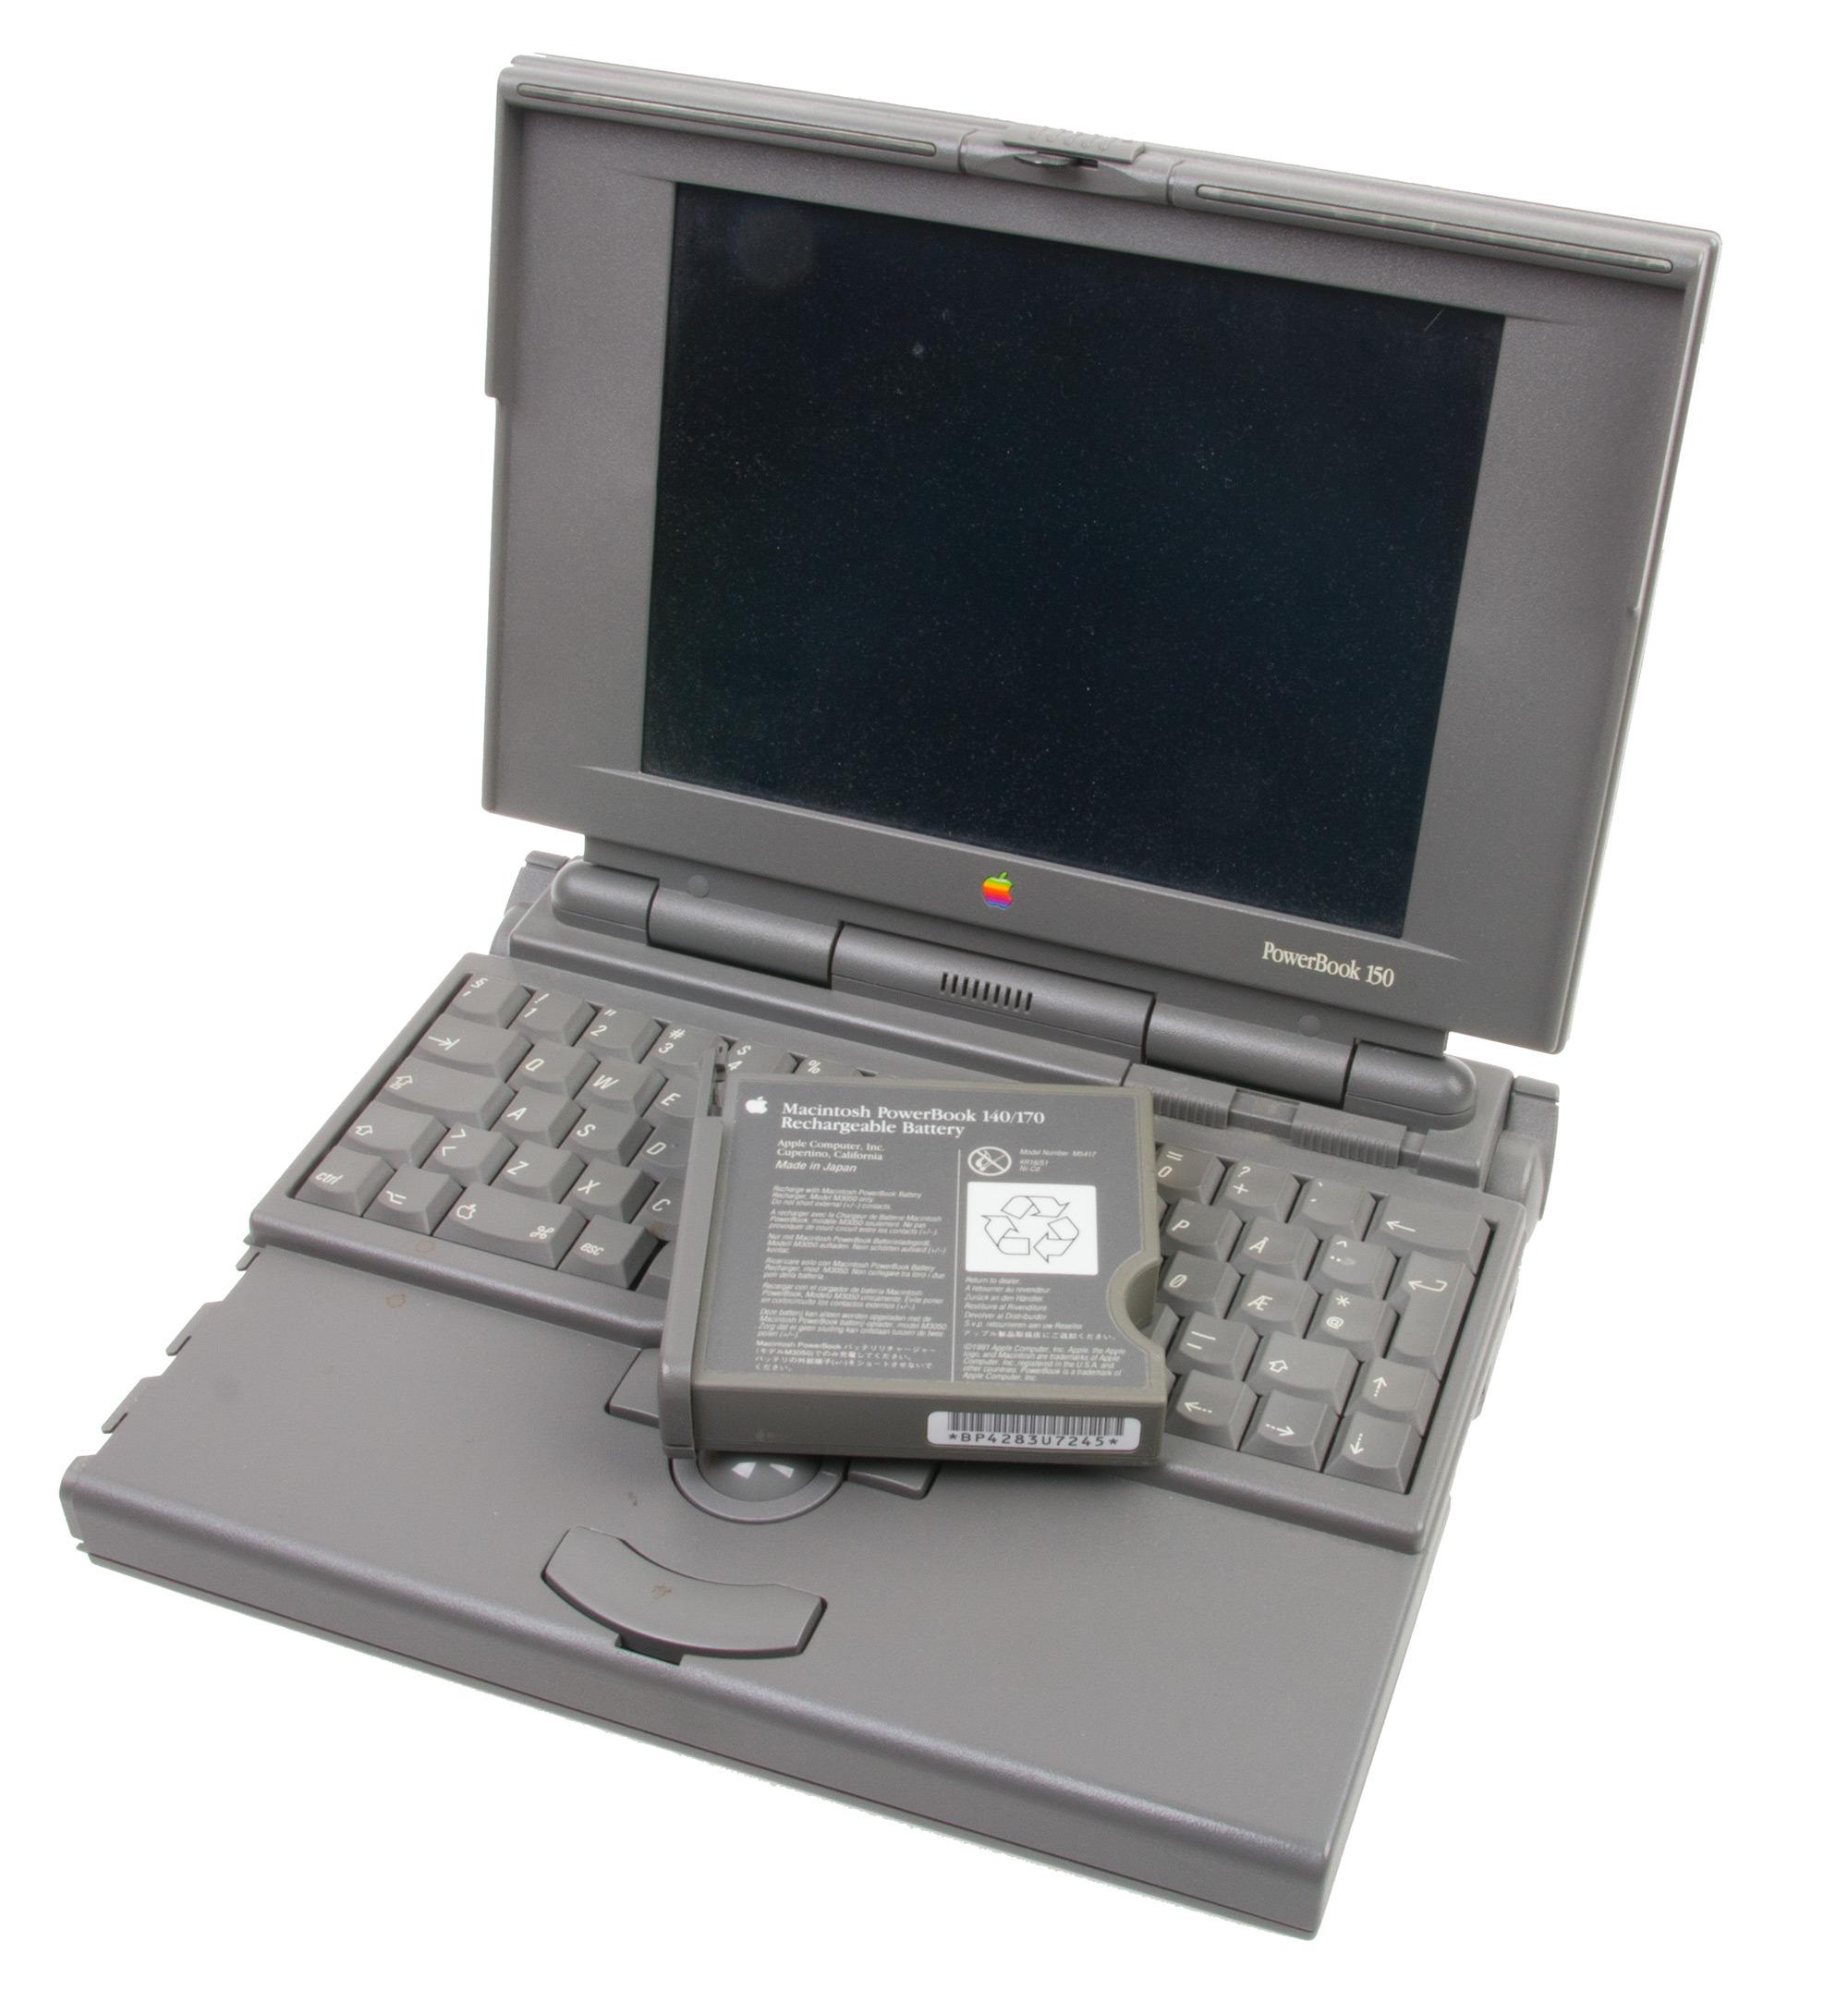 Nikkel-kadmium-batterier ble brukt i slikt som dette, en gammel Mac fra 90-tallet.Foto: Rolf B. Wegner, Hardware.no